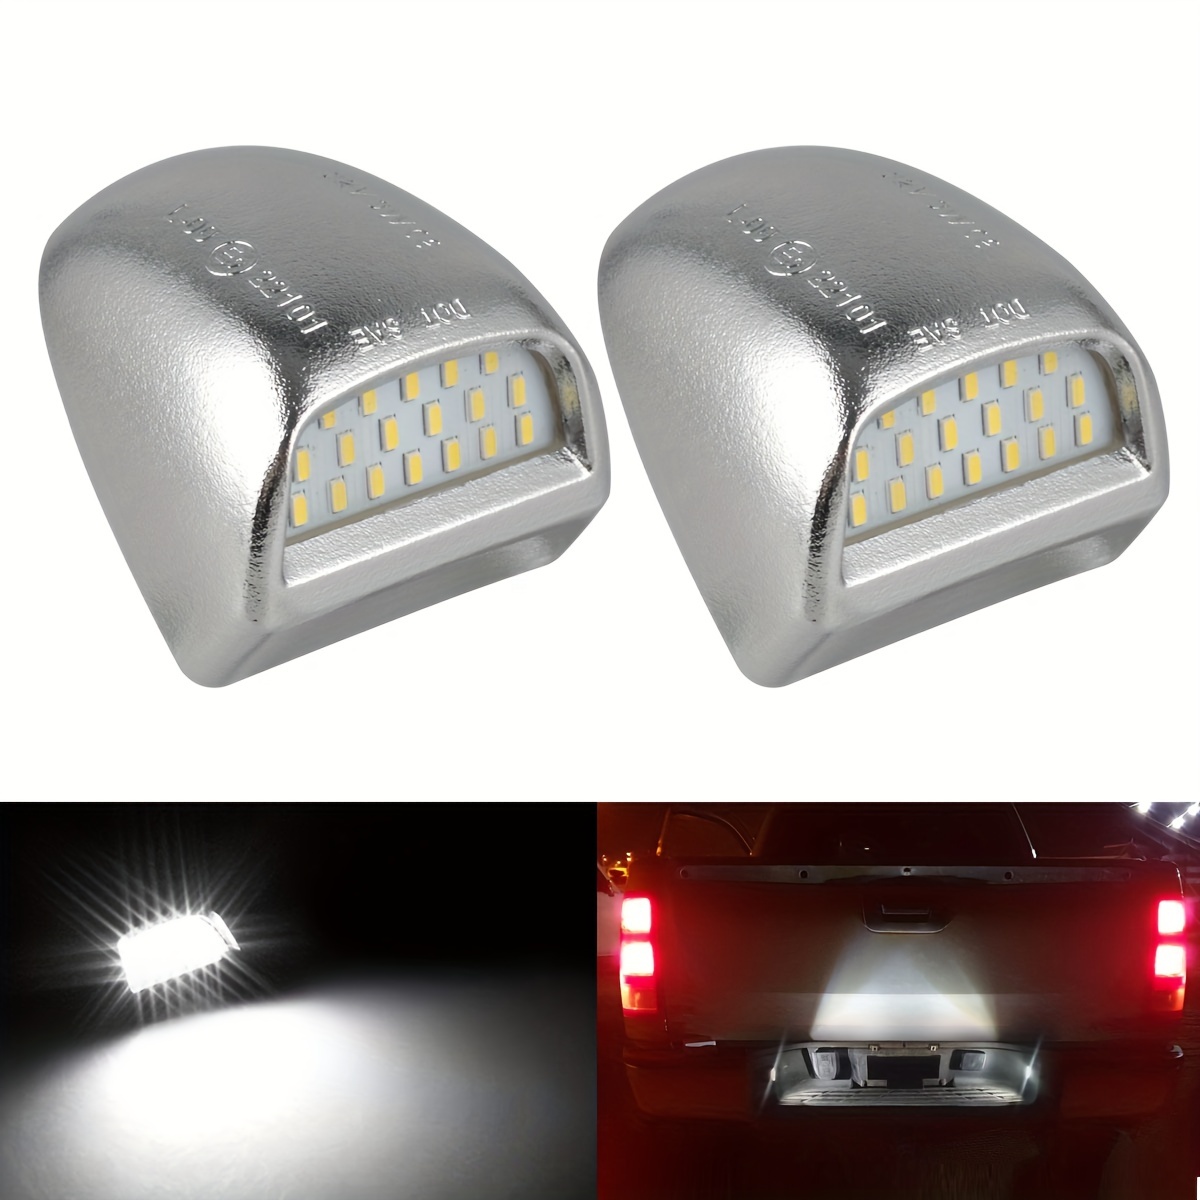 Kaufe LED-Kennzeichenleuchte für Cadillac Escalade Chevy Silverado 1500 2500  3500 Suburban Tahoe GMC Sierra 1500 2500 3500 Yukon